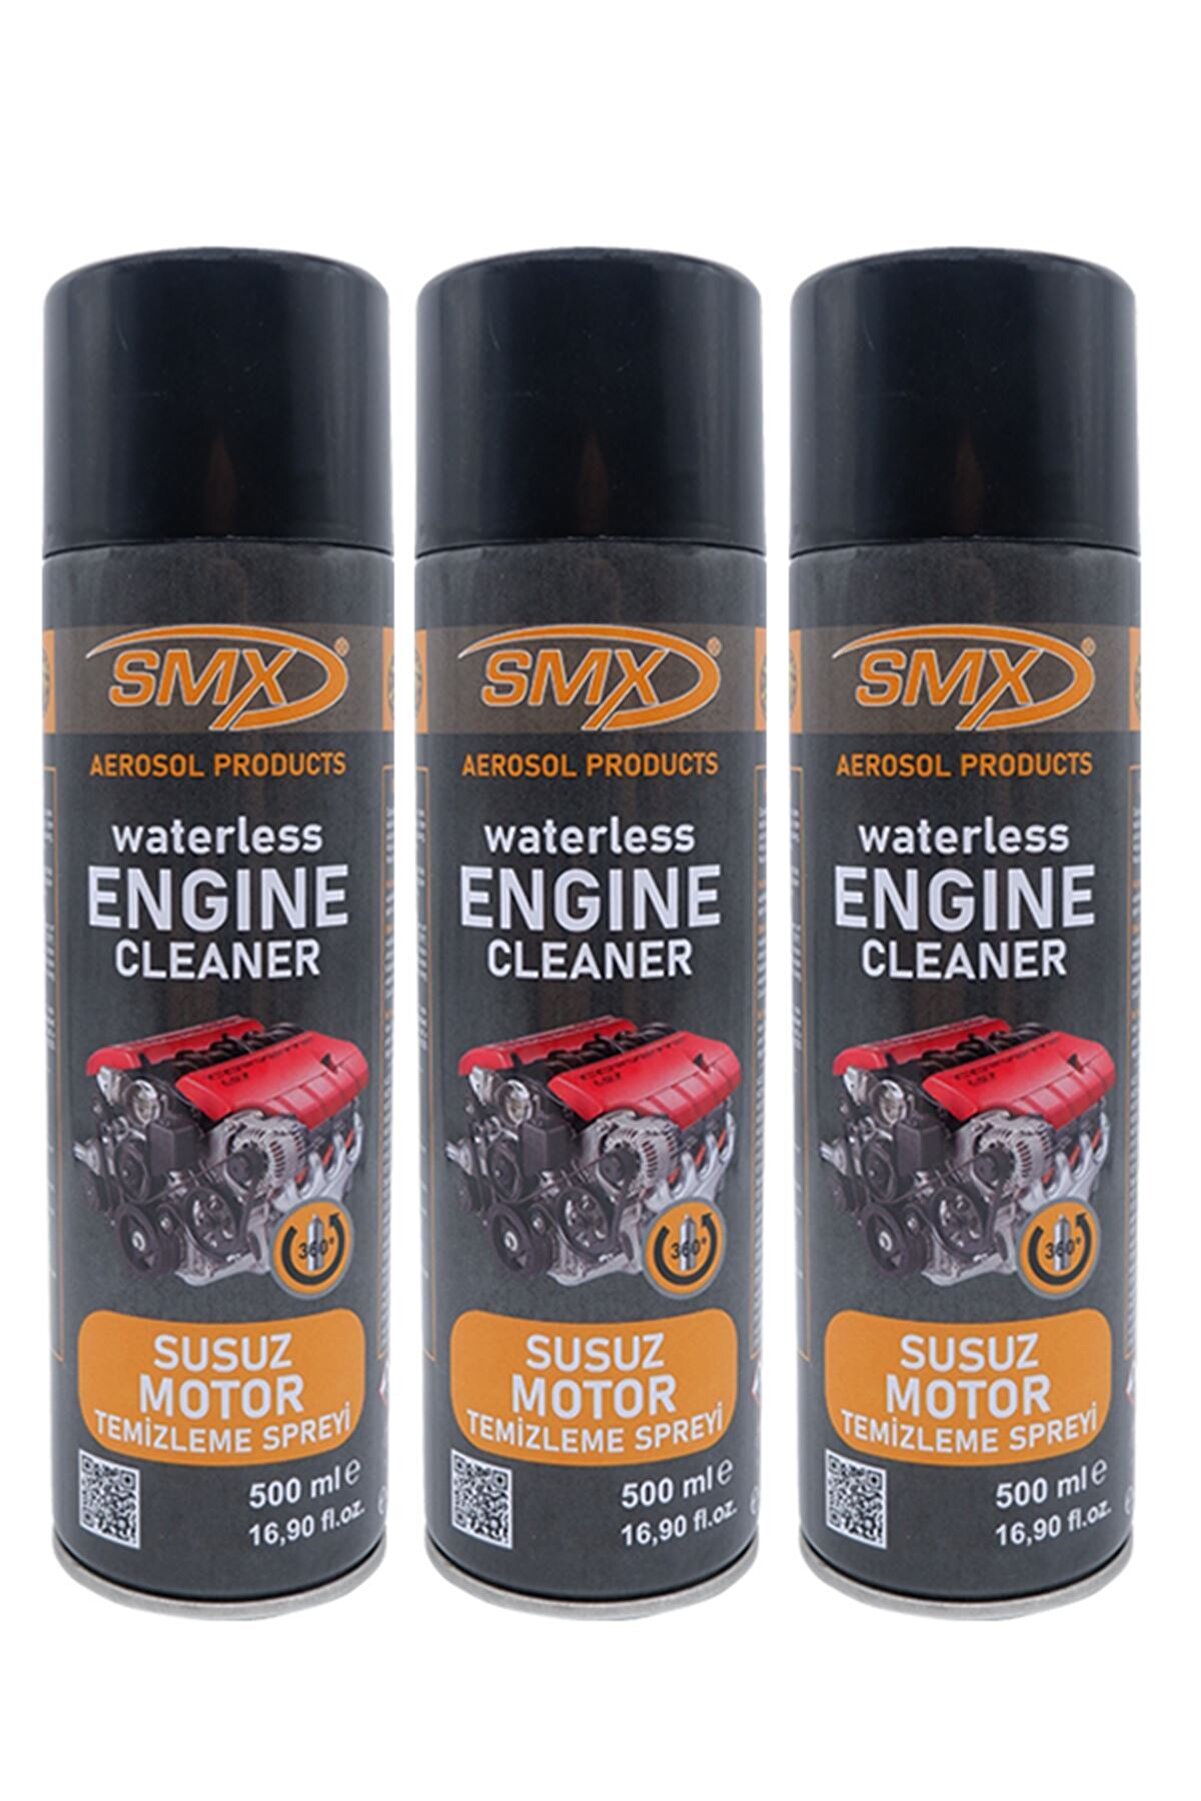 SMX Susuz Motor Temizleme Spreyi 3 Adet (3x500 Ml)